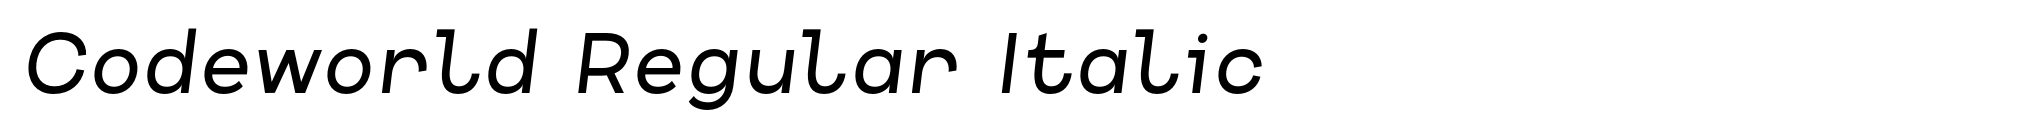 Codeworld Regular Italic image